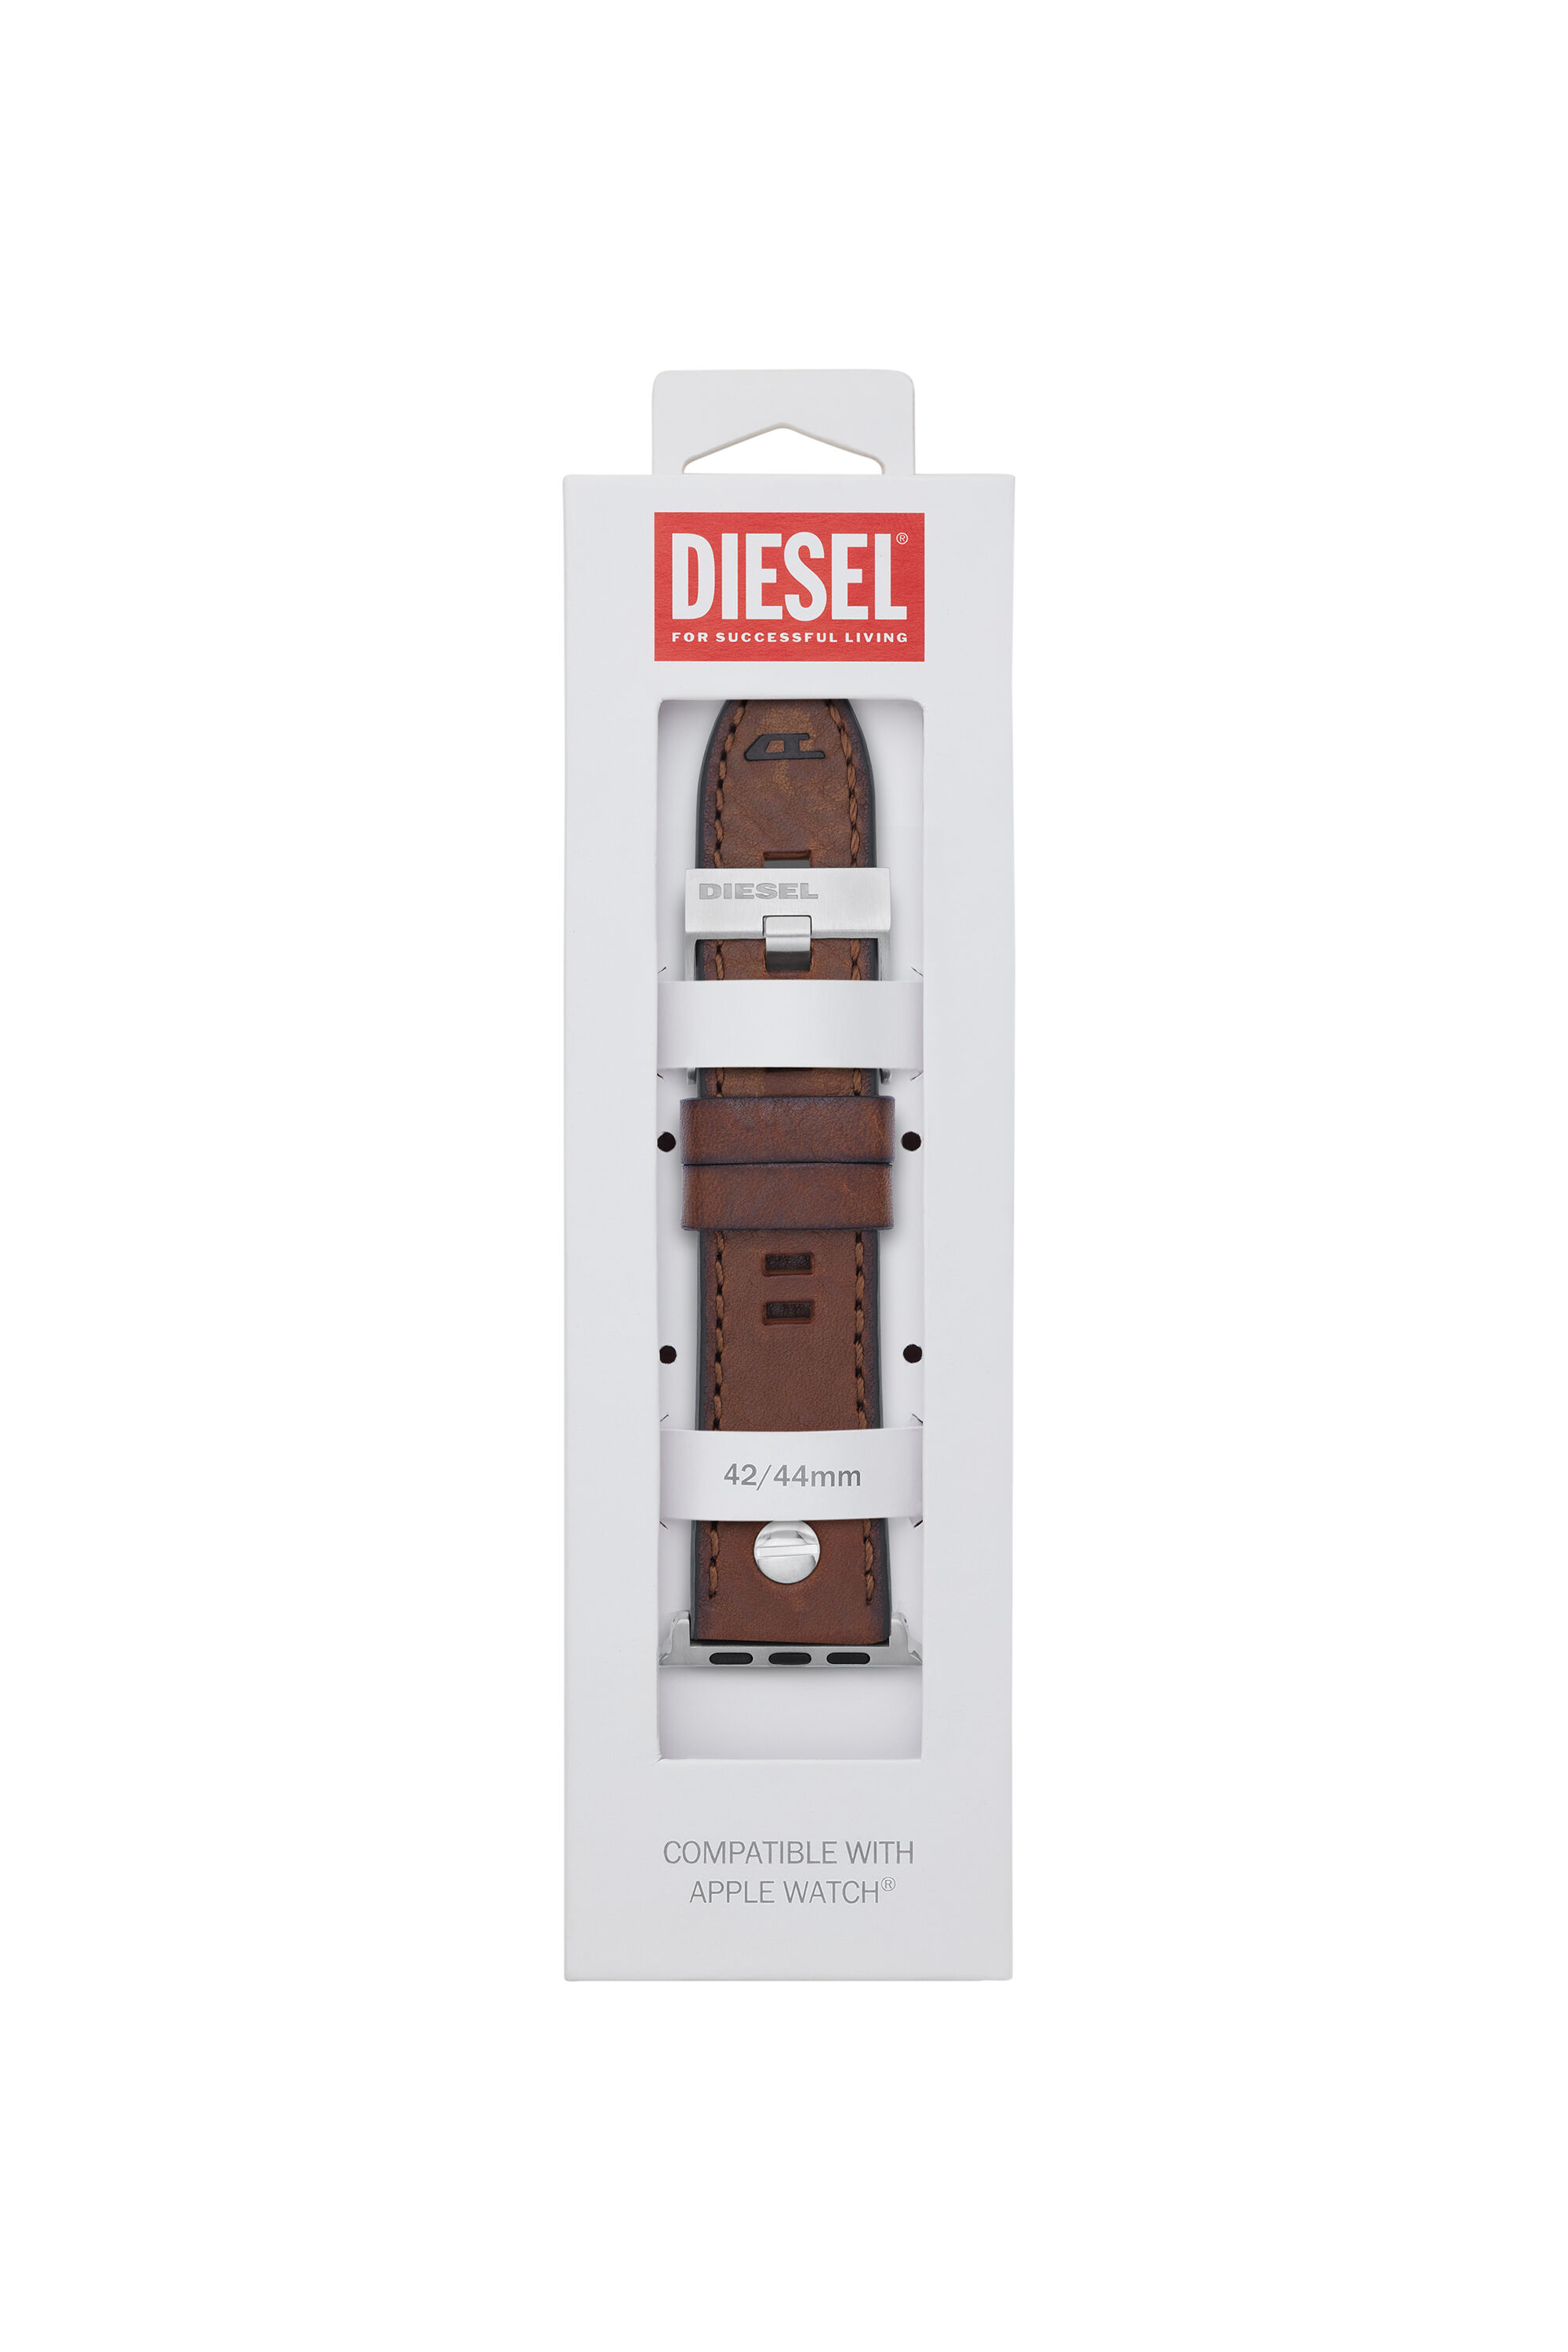 Diesel - DSS002, Brown - Image 2